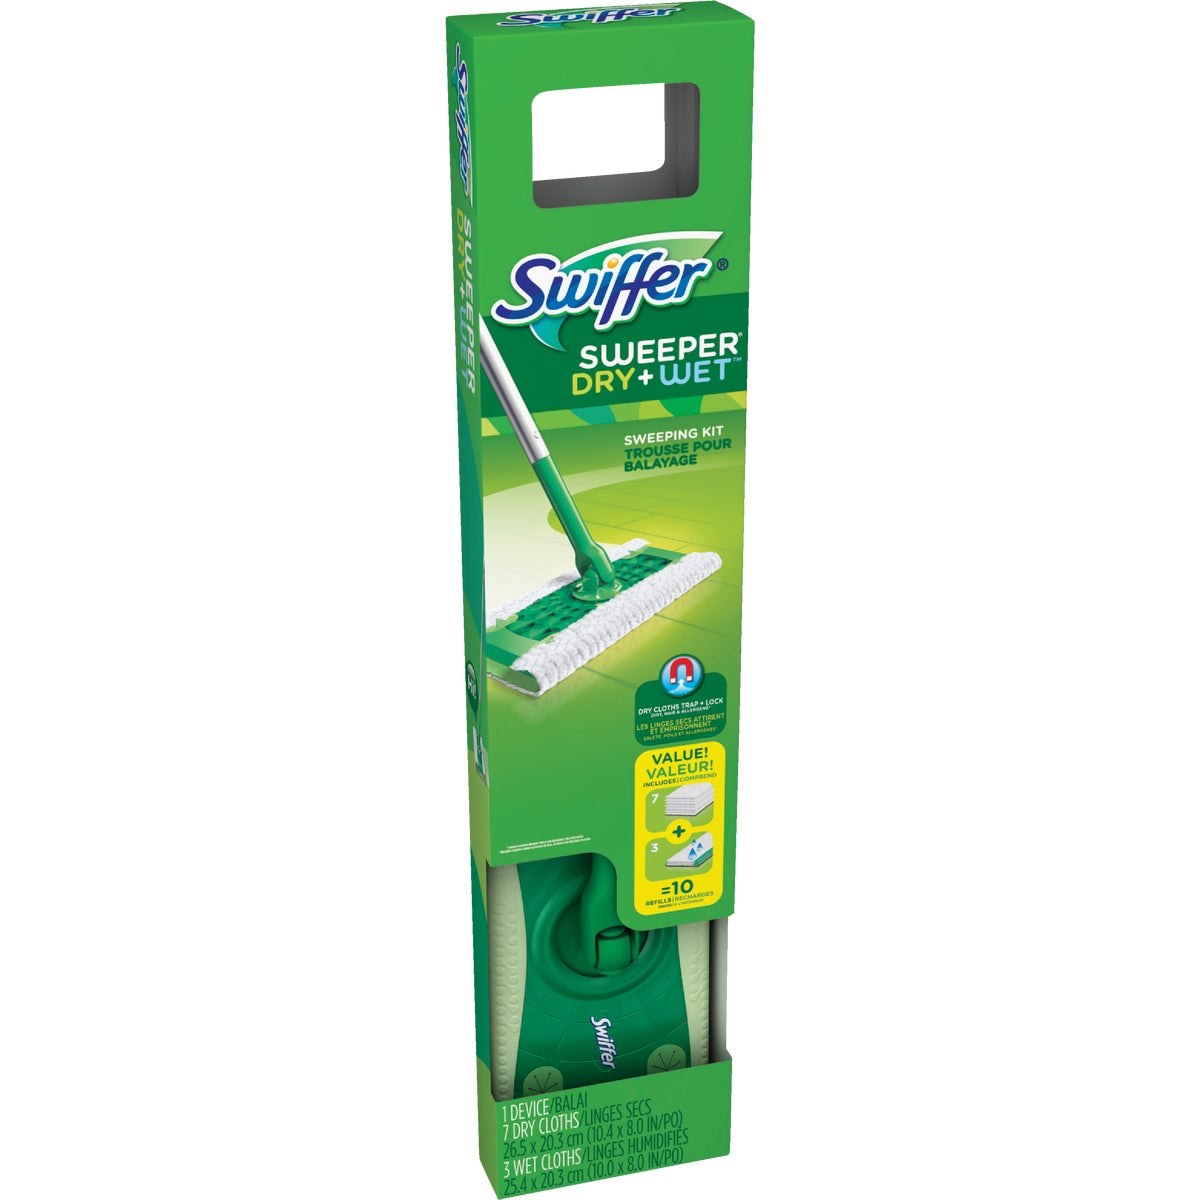 Swiffer Sweeper Dry + Wet Mop